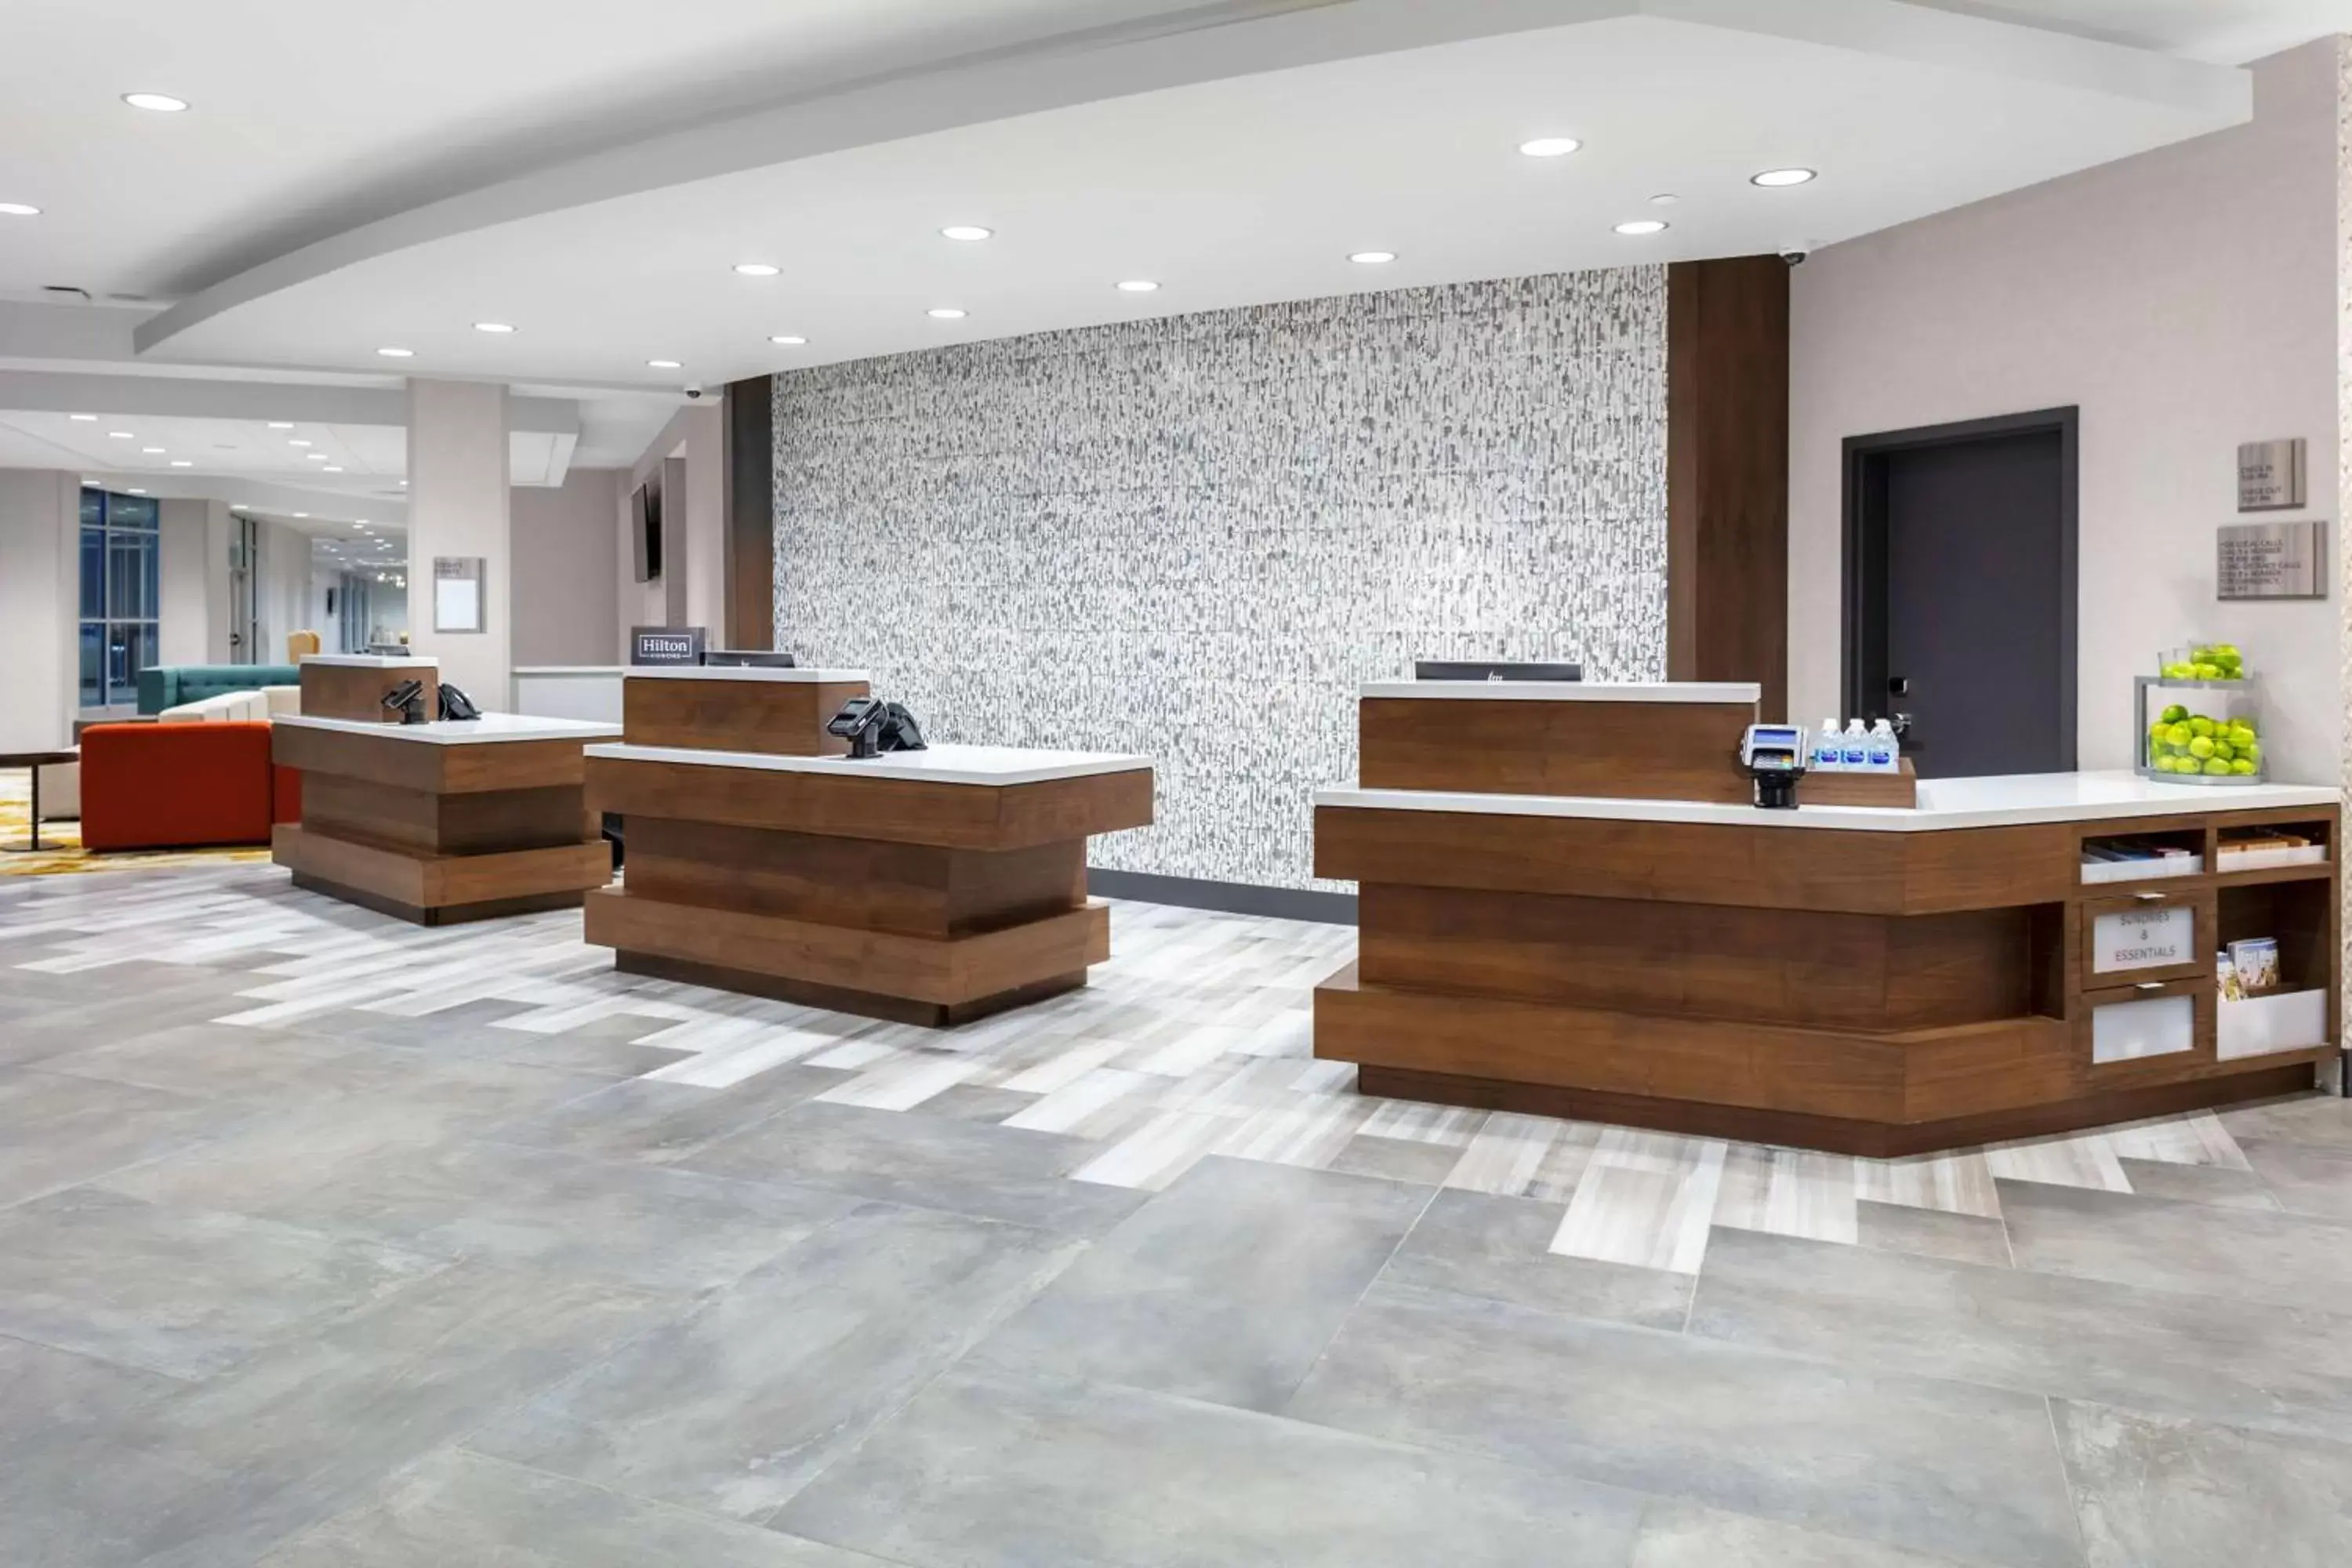 Lobby or reception, Lobby/Reception in Hilton Garden Inn By Hilton Fort Wayne North